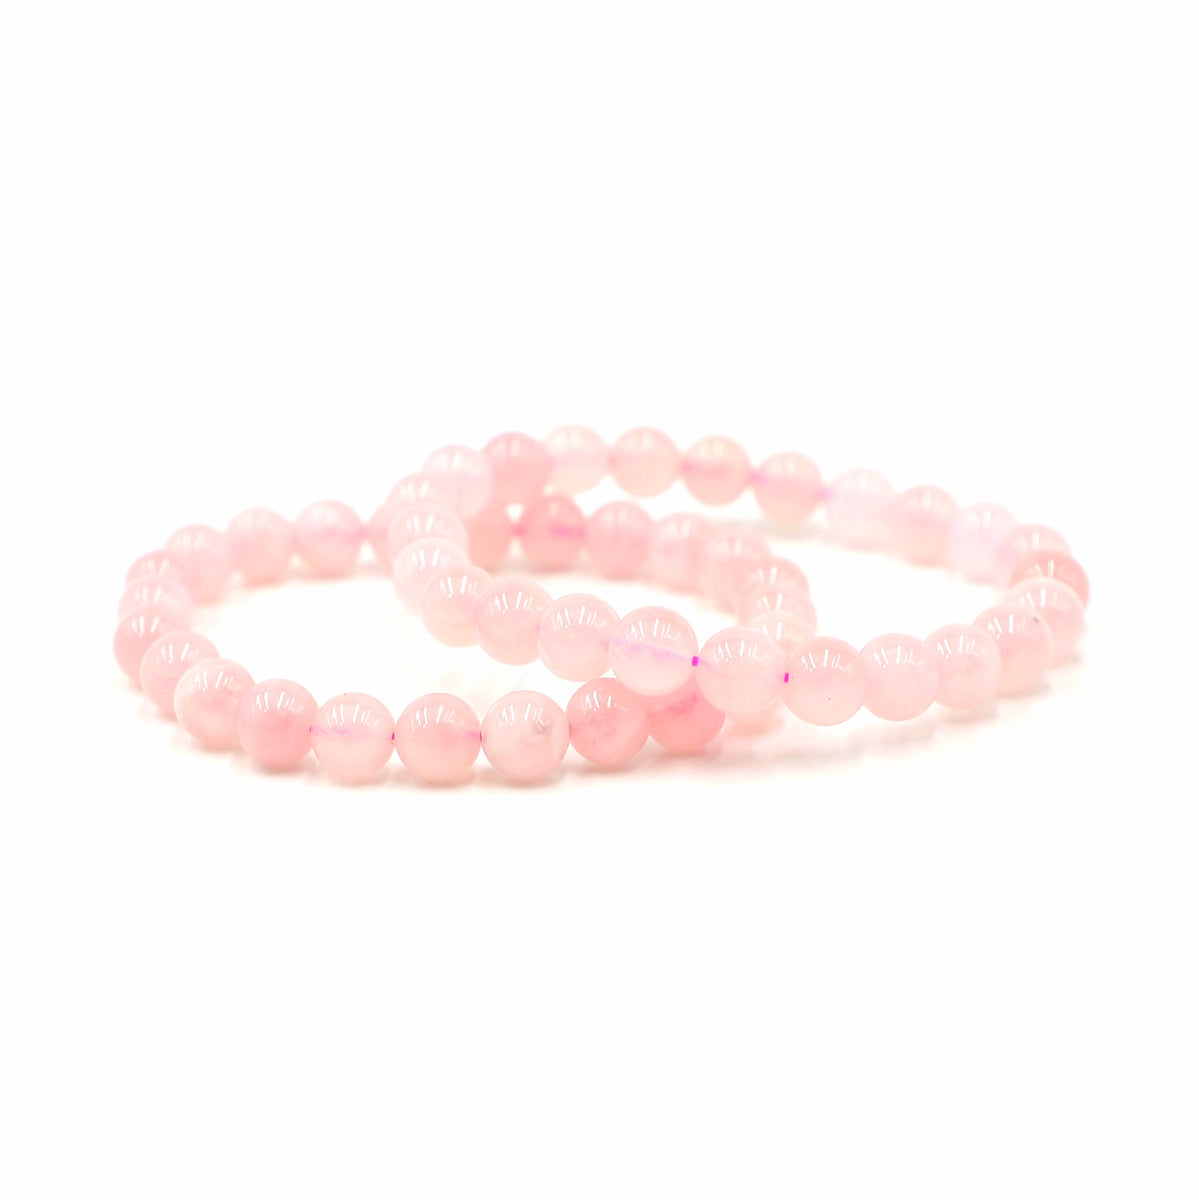 Crystal Bracelets for Manifesting Rose Quartz + Prism Beads